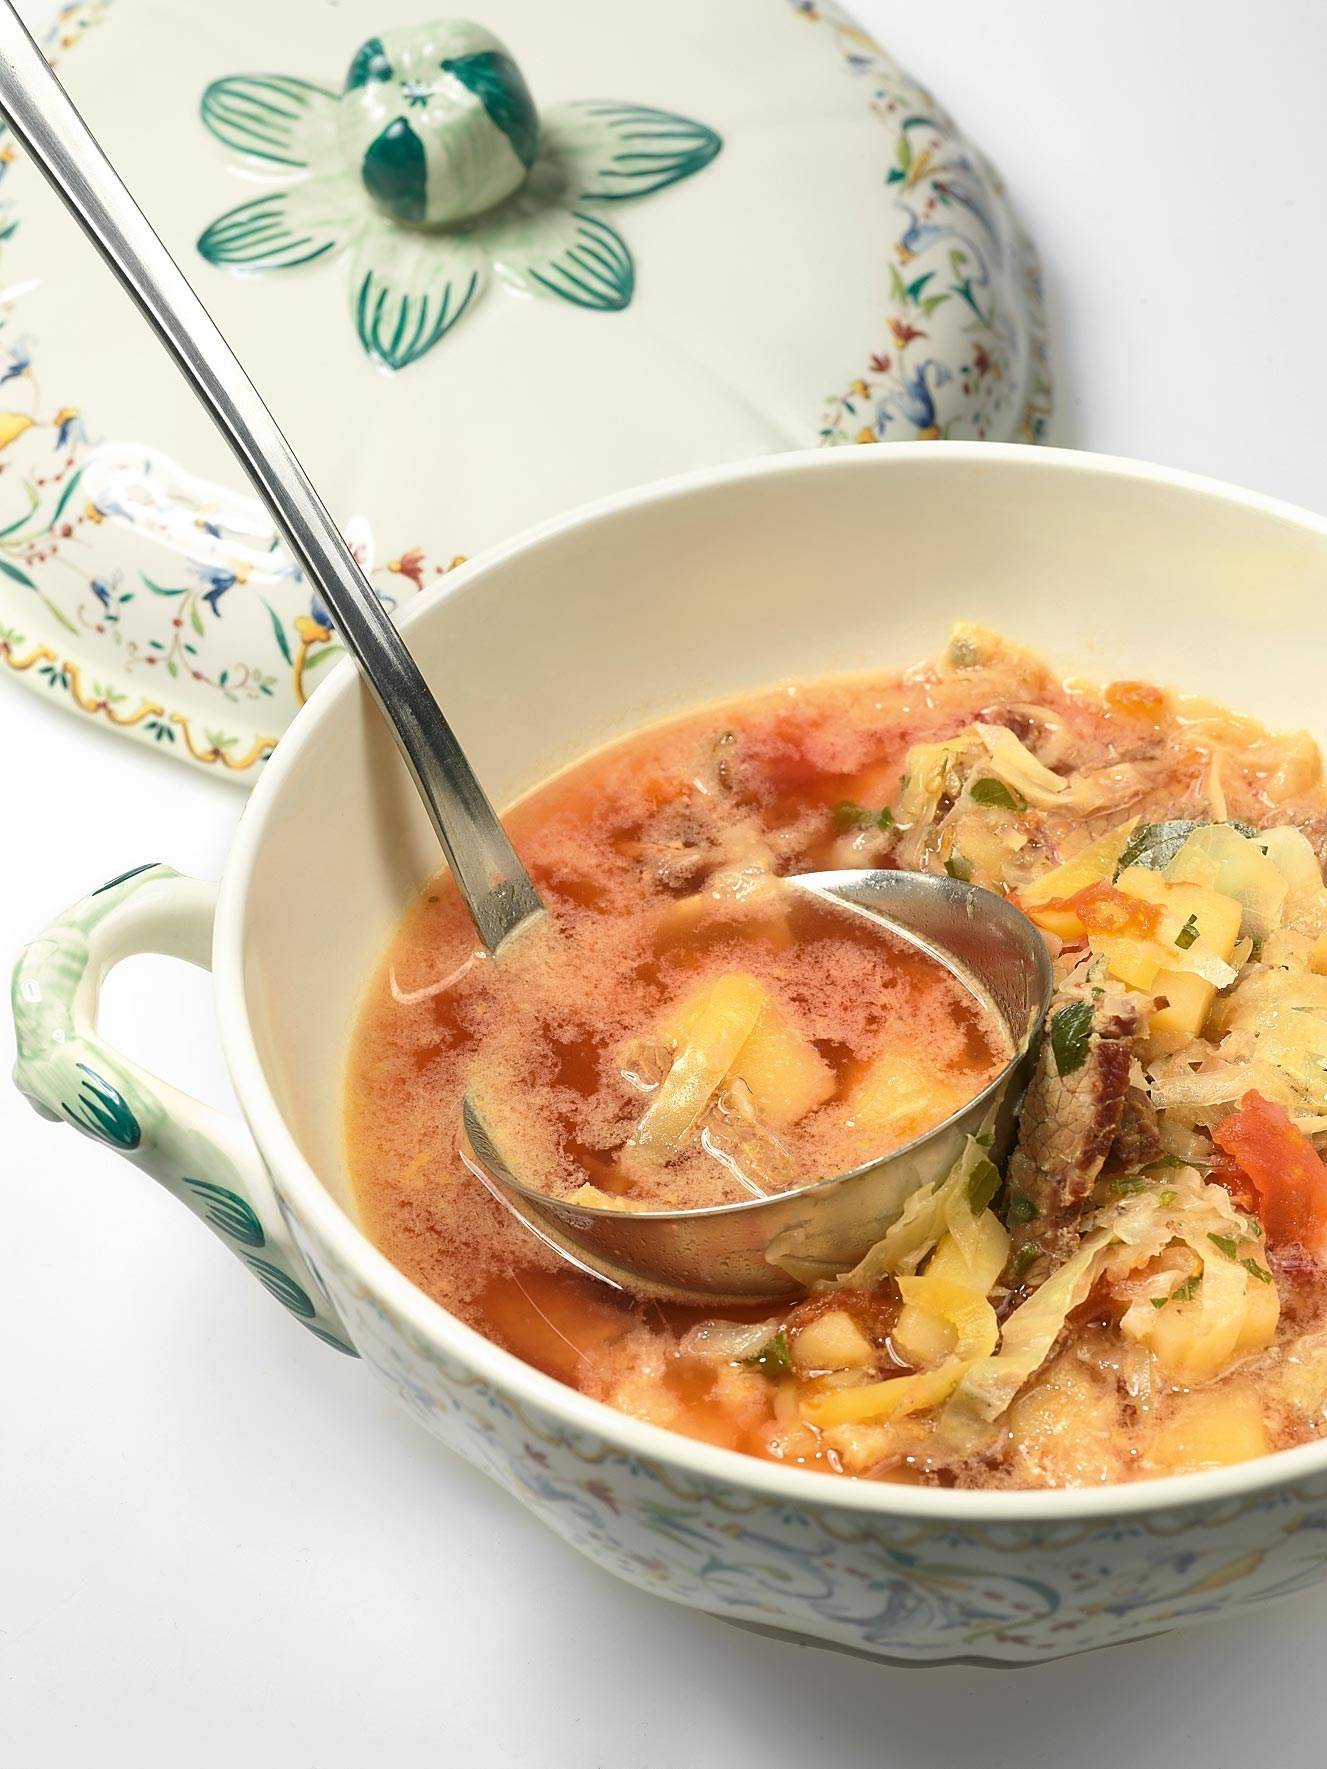 �Гороховый суп с салом копченым рецепт с фото пошагово